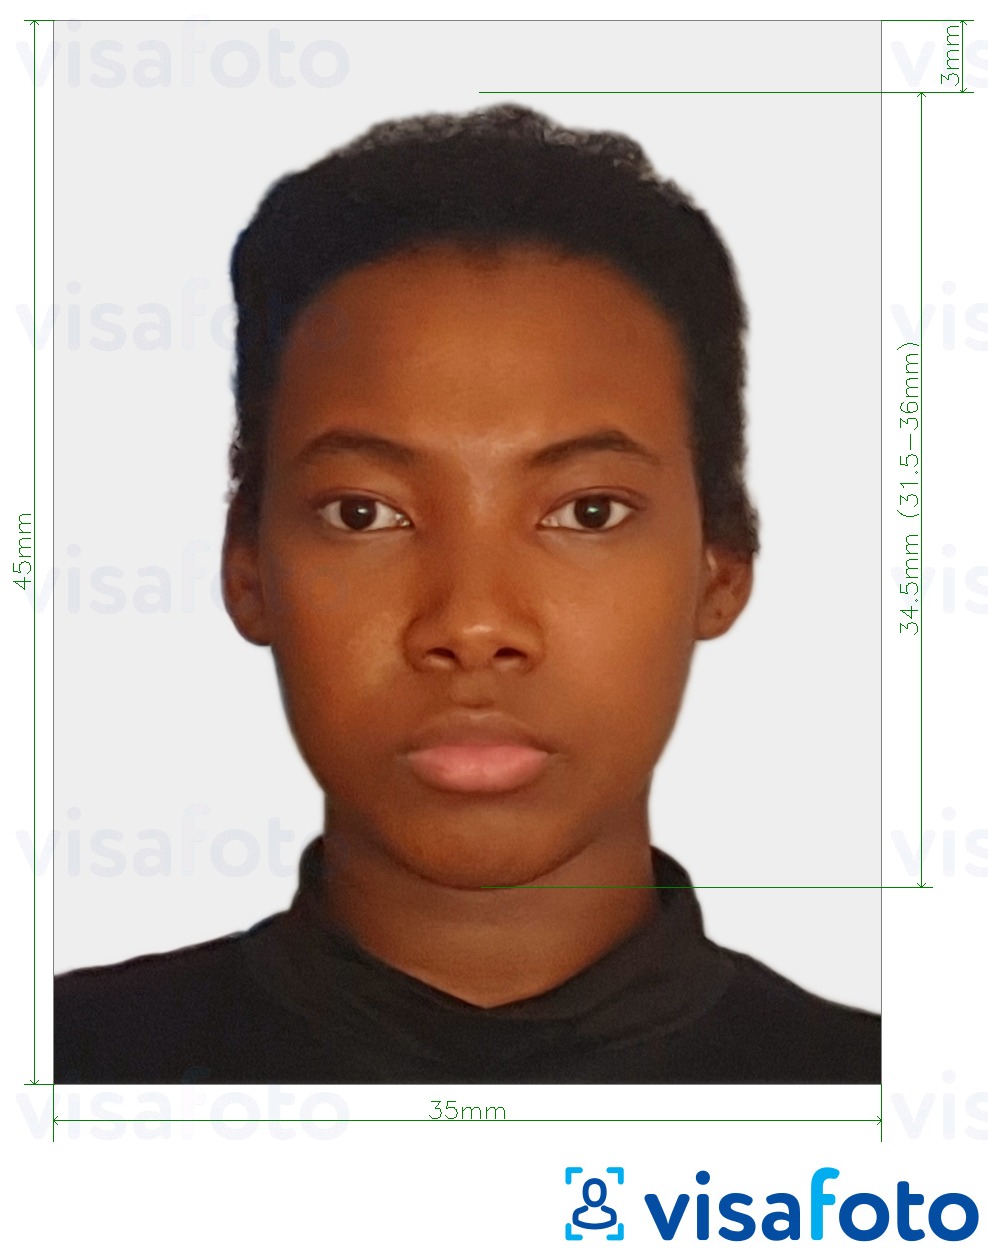 Exemple de foto per a Visa de Surinam 45x35 mm (1.77 x 1.37 polzades) amb la mida exacta especificada